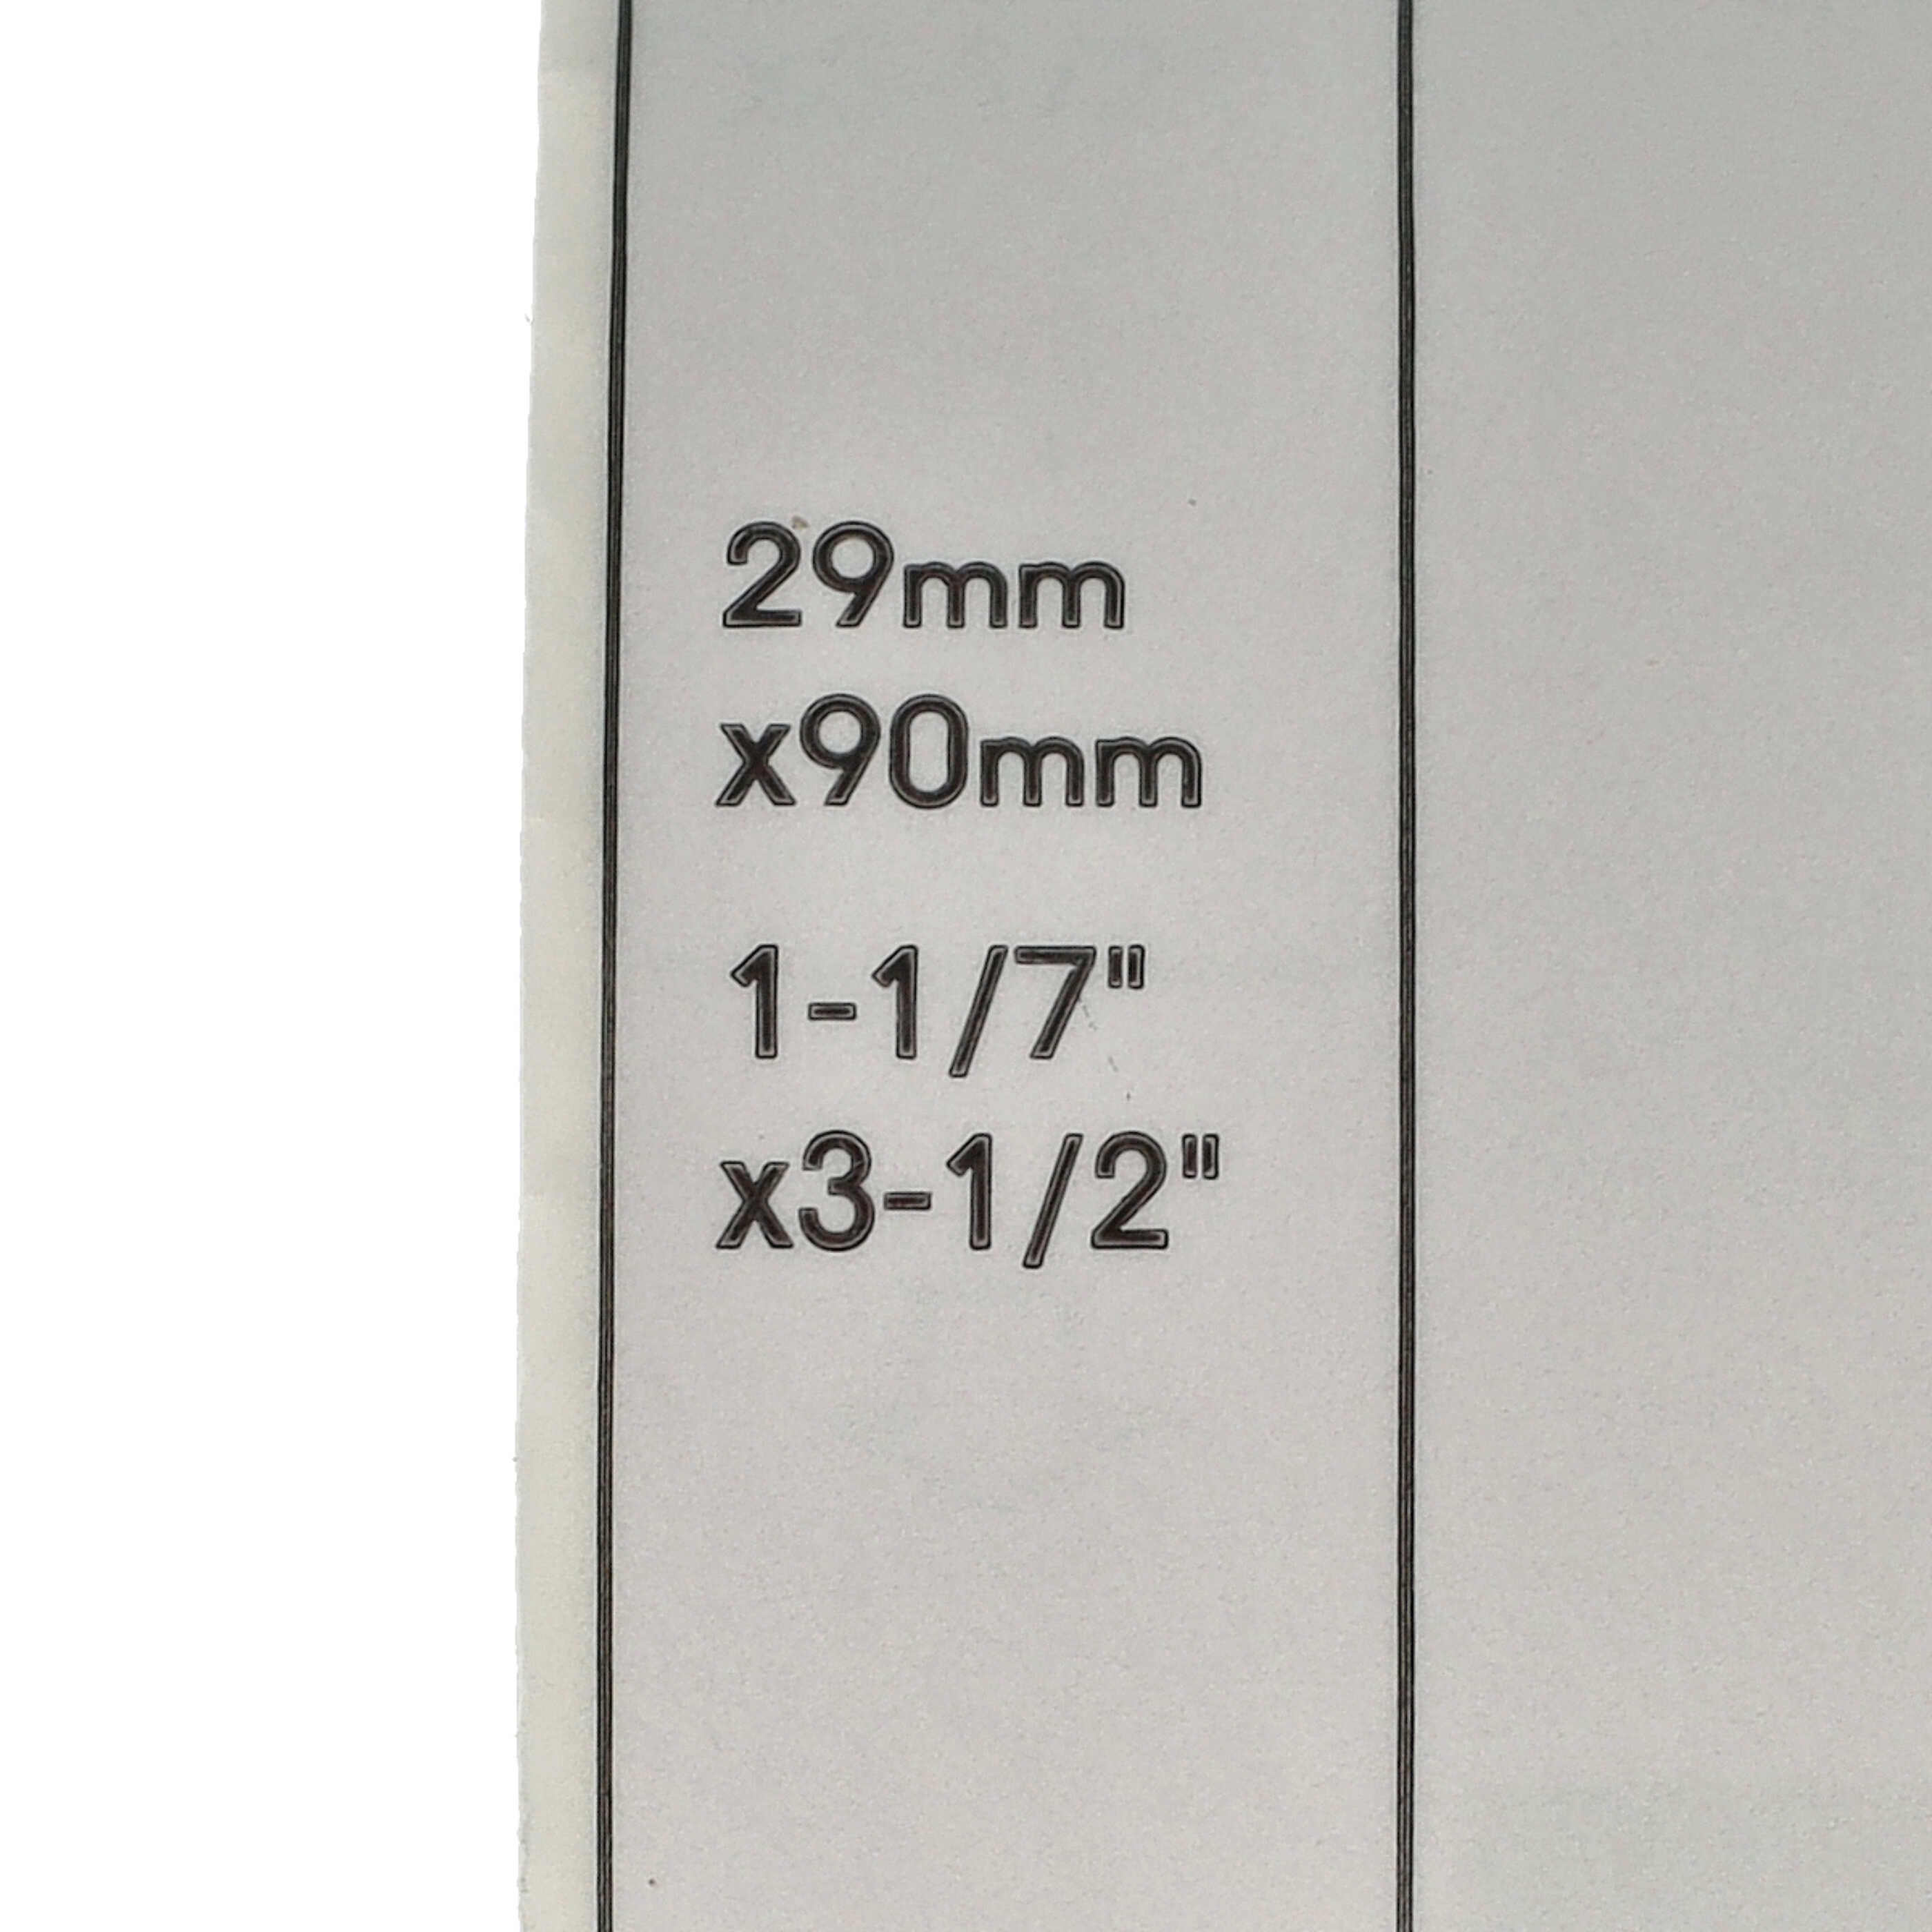 Etiketten als Ersatz für Brother DK-11201 Etikettendrucker - Standard 29mm x 90mm